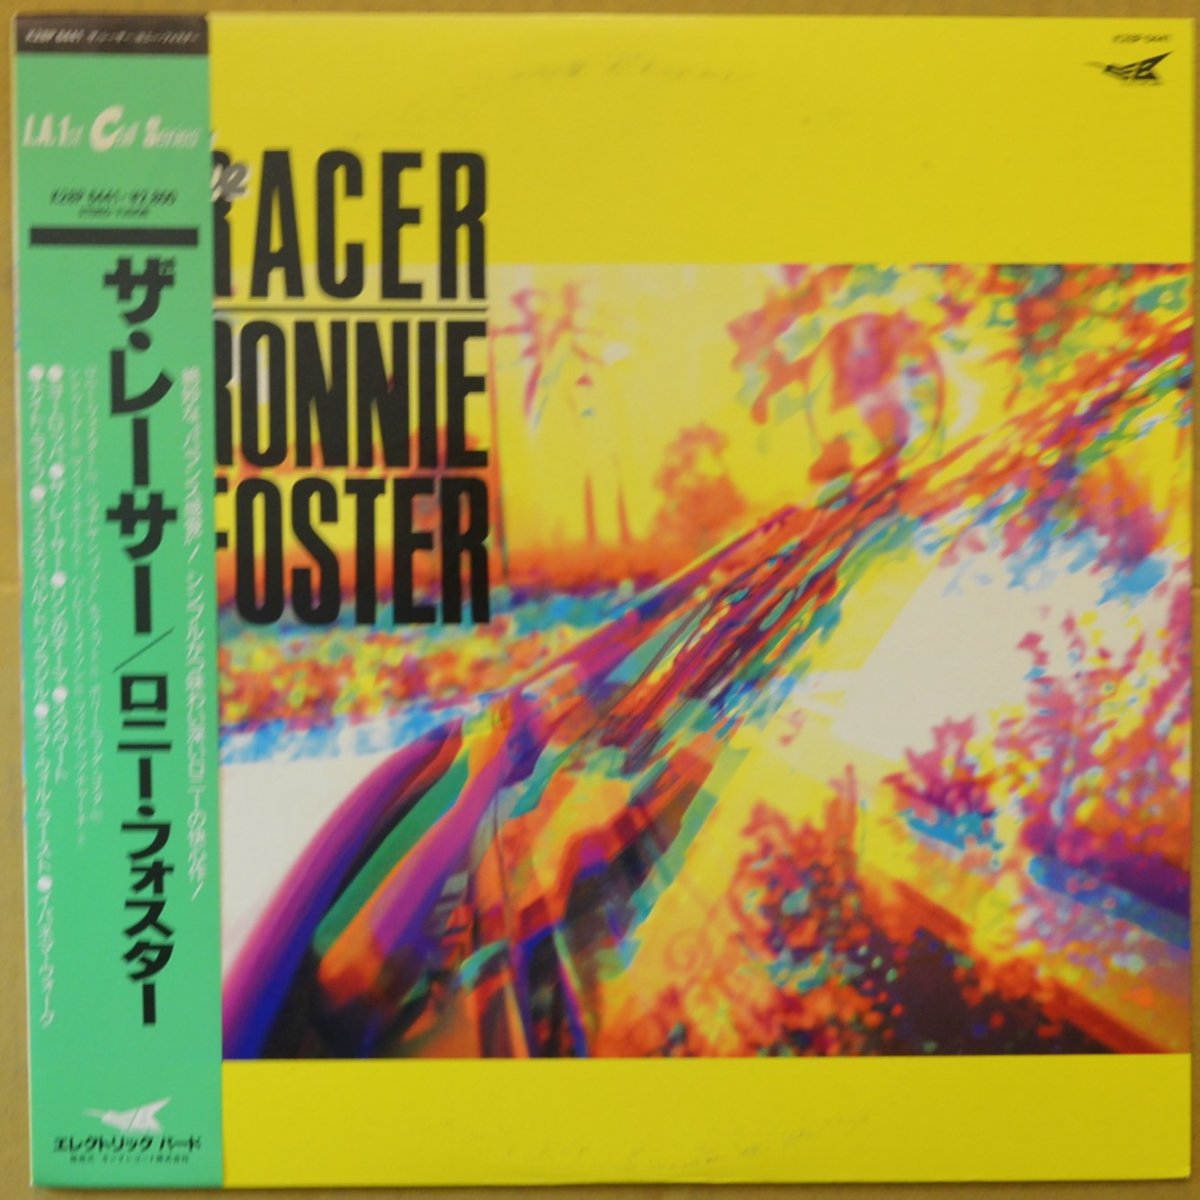 ロニー・フォスター RONNIE FOSTER / ザ・レーサー THE RACER (LP)